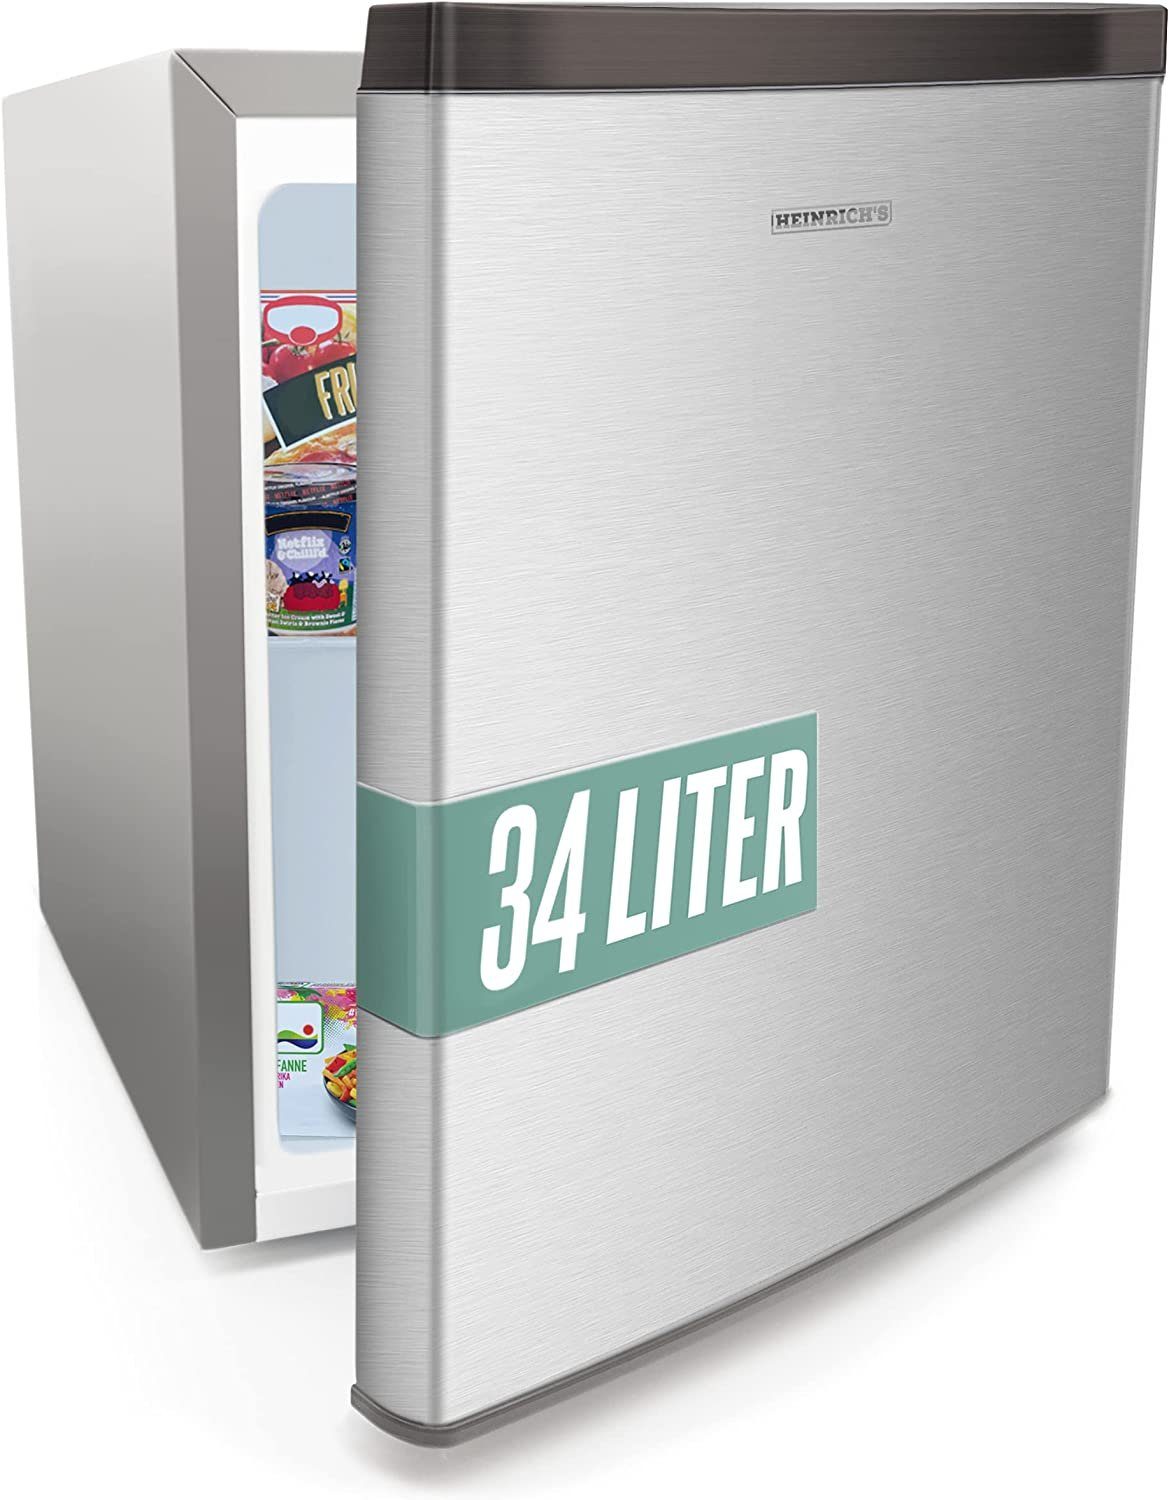 Heinrich´s Gefrierschrank Mini Freezer HGB 4088, 51 cm hoch, 44 cm breit, Gefrierbox, 39db, Freezer 34L perfekt Tiefkühlen Edelstahl